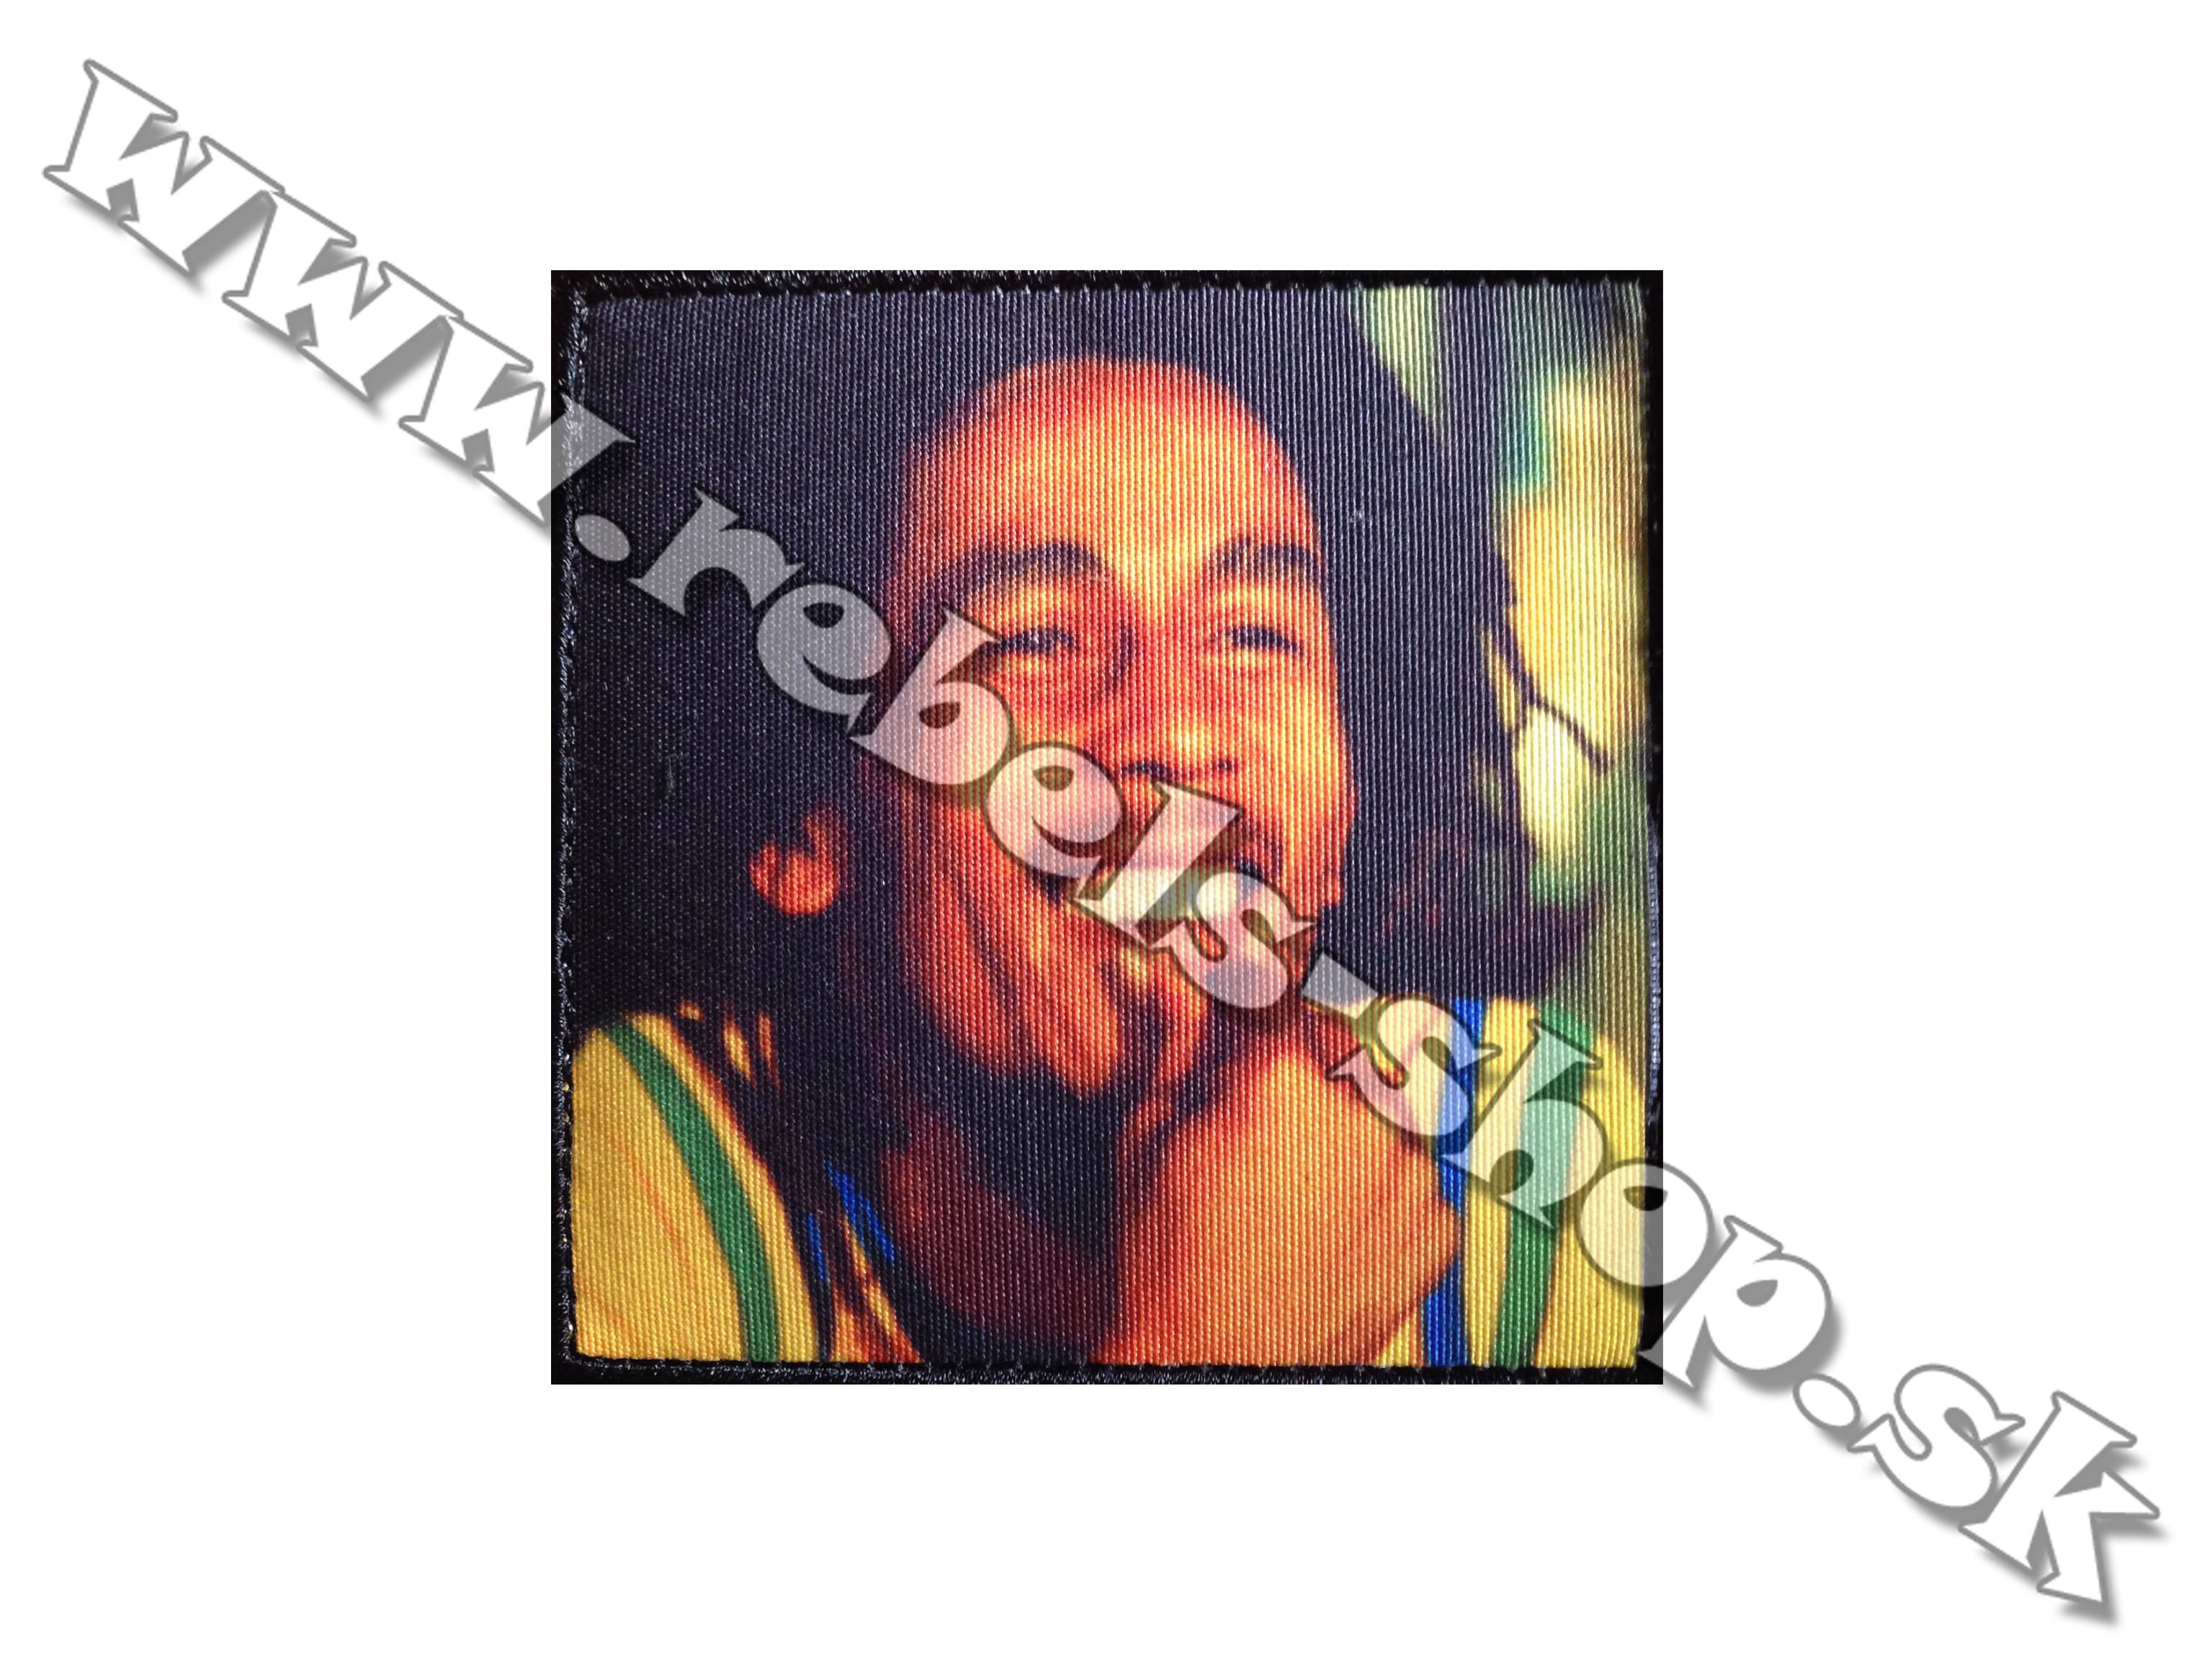 Nášivka "Bob Marley"